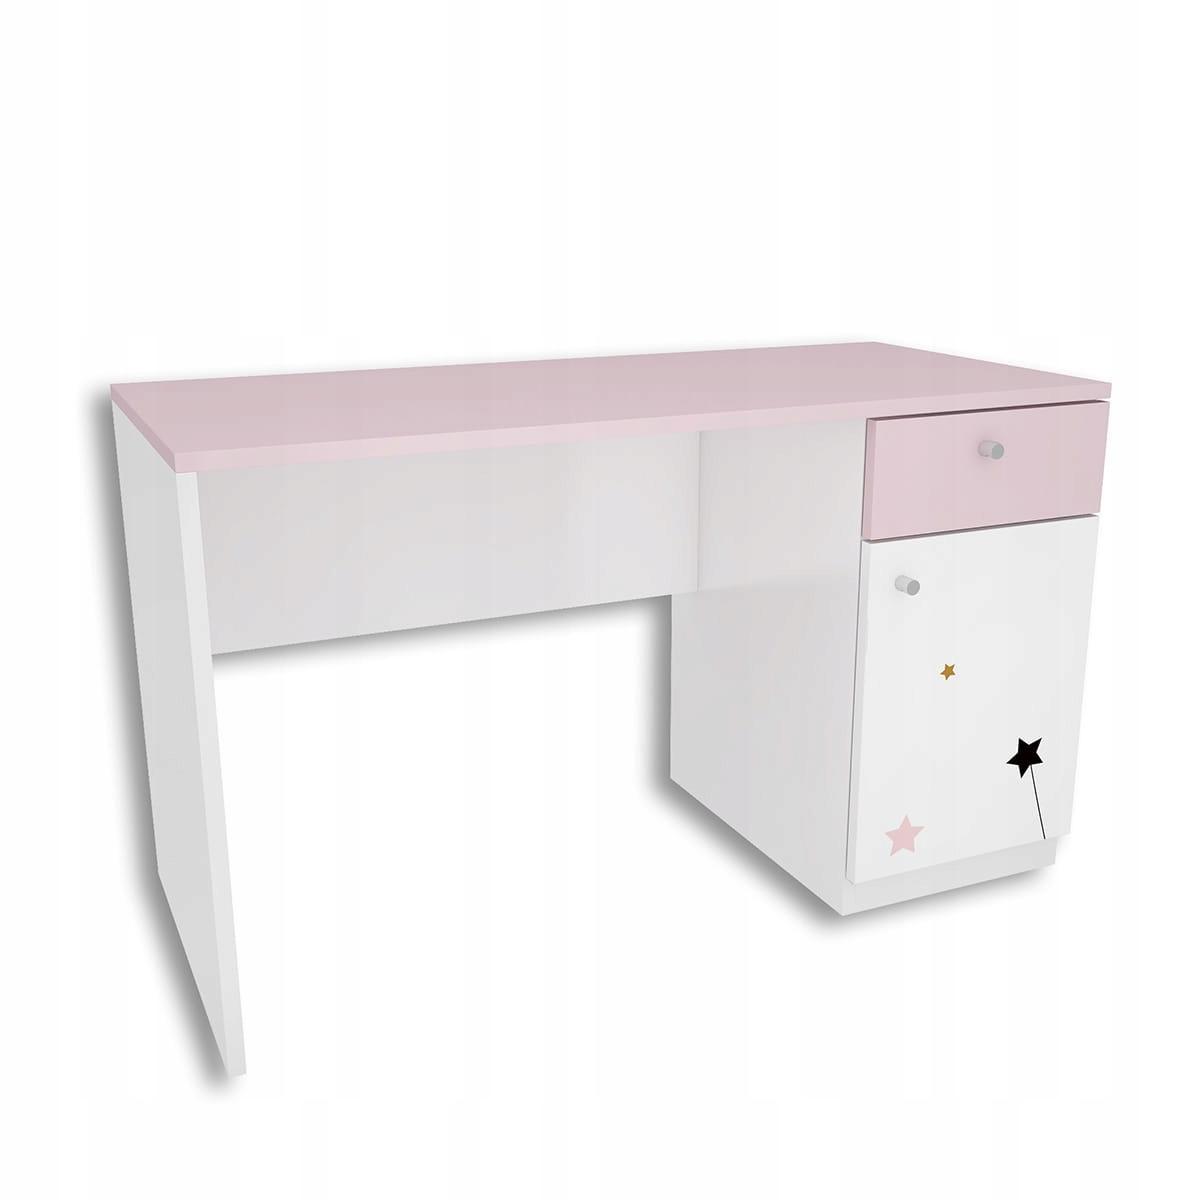 Zestaw 4 szt mebli FAIRY biało różowe szafa, biurko, 2 szafki wiszące dla dziecka  2 Full Screen